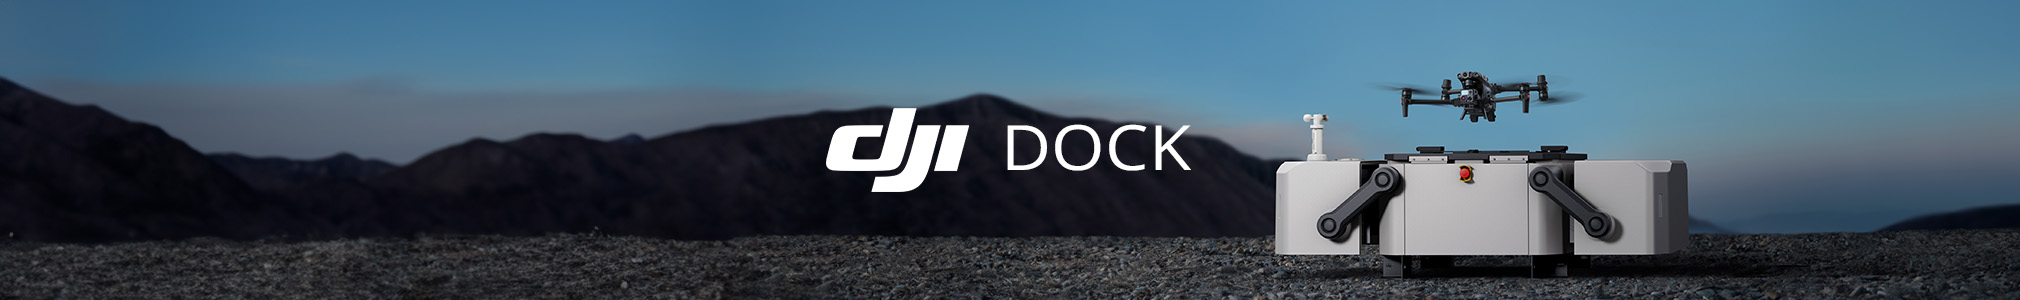 DJI Dock